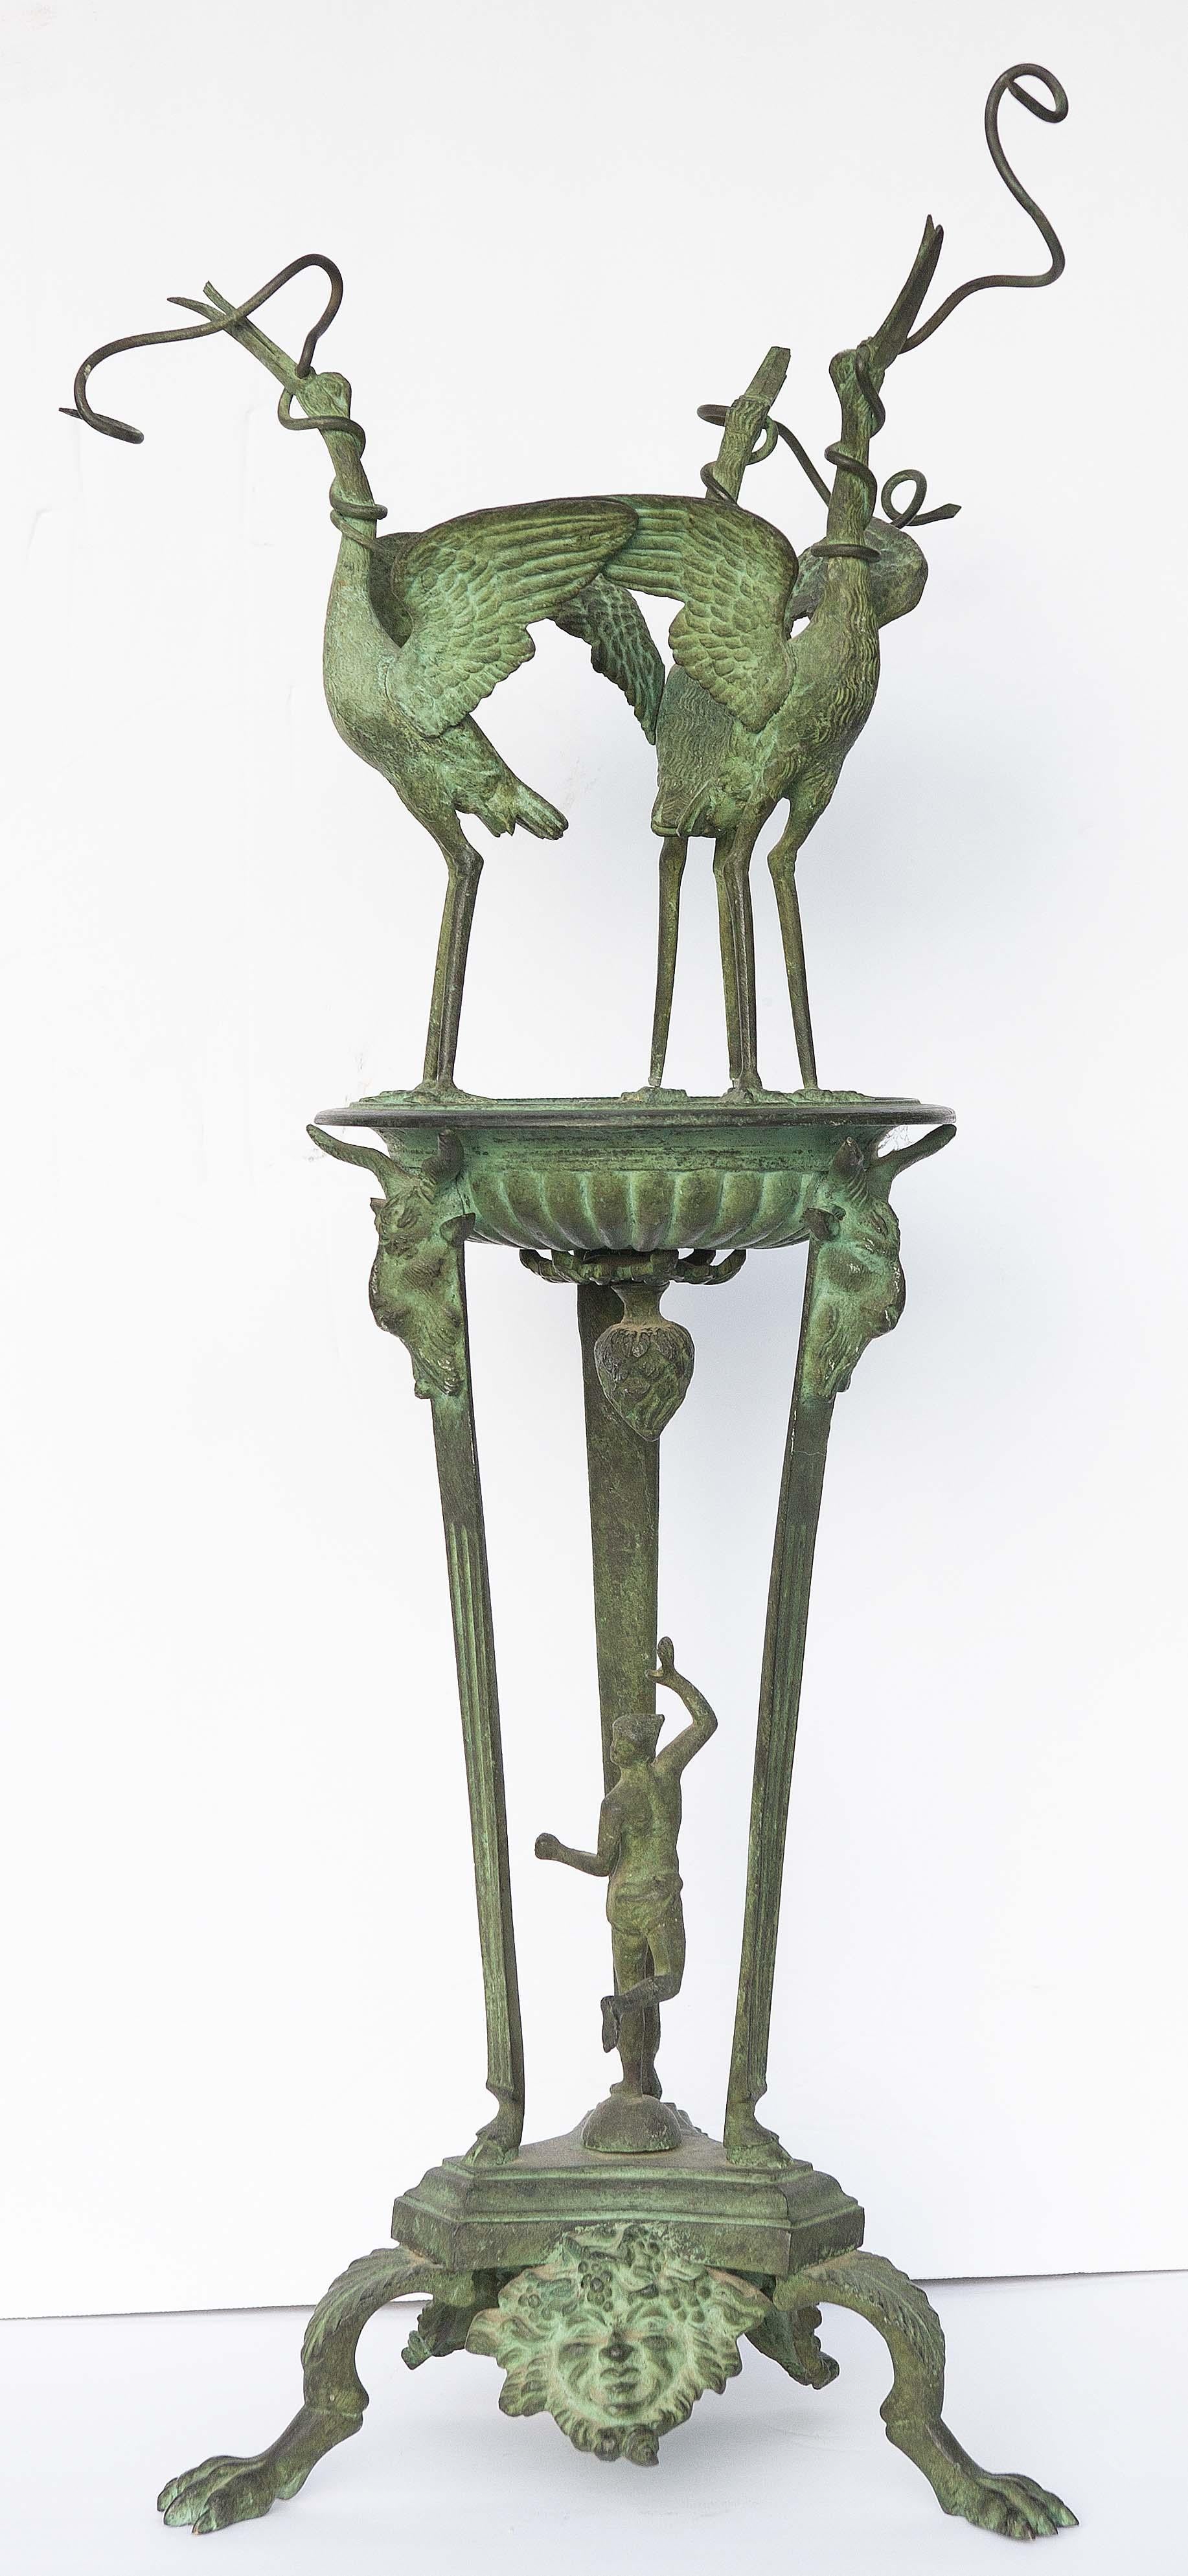 Römische Öllampe aus Grünspanbronze. Fliegende Kräne mit laufendem Quecksilber. Nach dem in Pompeji gefundenen Original. Diese  Der Sockel der Lampe war ursprünglich mit kleinen Öllampen ausgestattet, die am Schnabel des Kranichs hingen.  Grand Tour